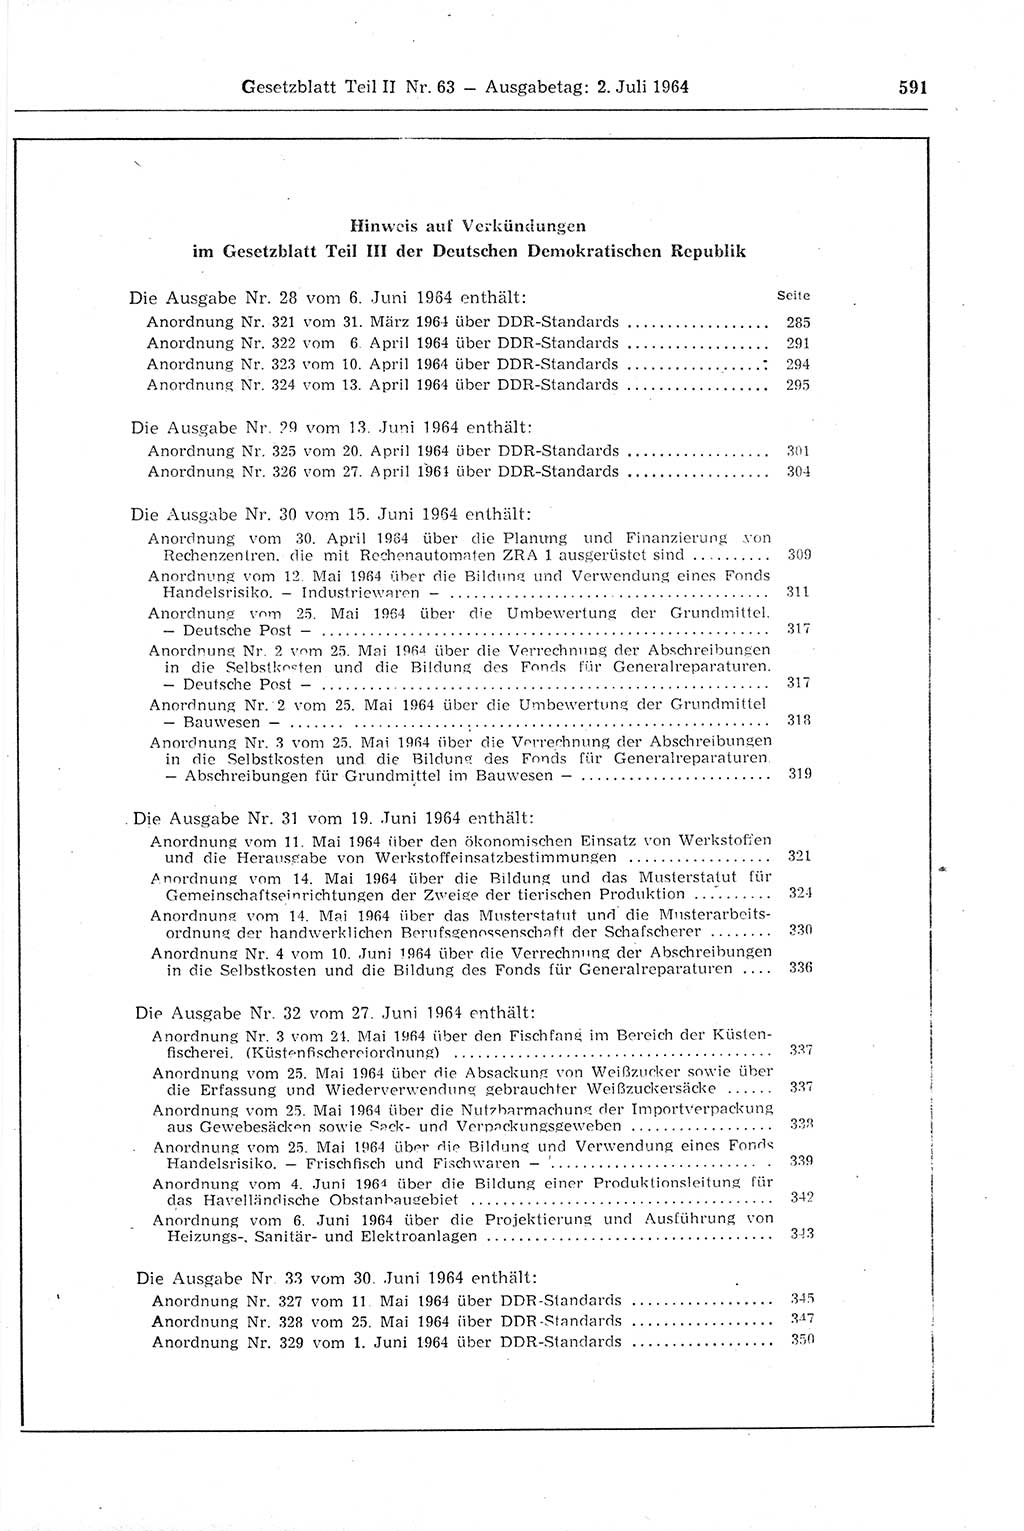 Gesetzblatt (GBl.) der Deutschen Demokratischen Republik (DDR) Teil ⅠⅠ 1964, Seite 591 (GBl. DDR ⅠⅠ 1964, S. 591)